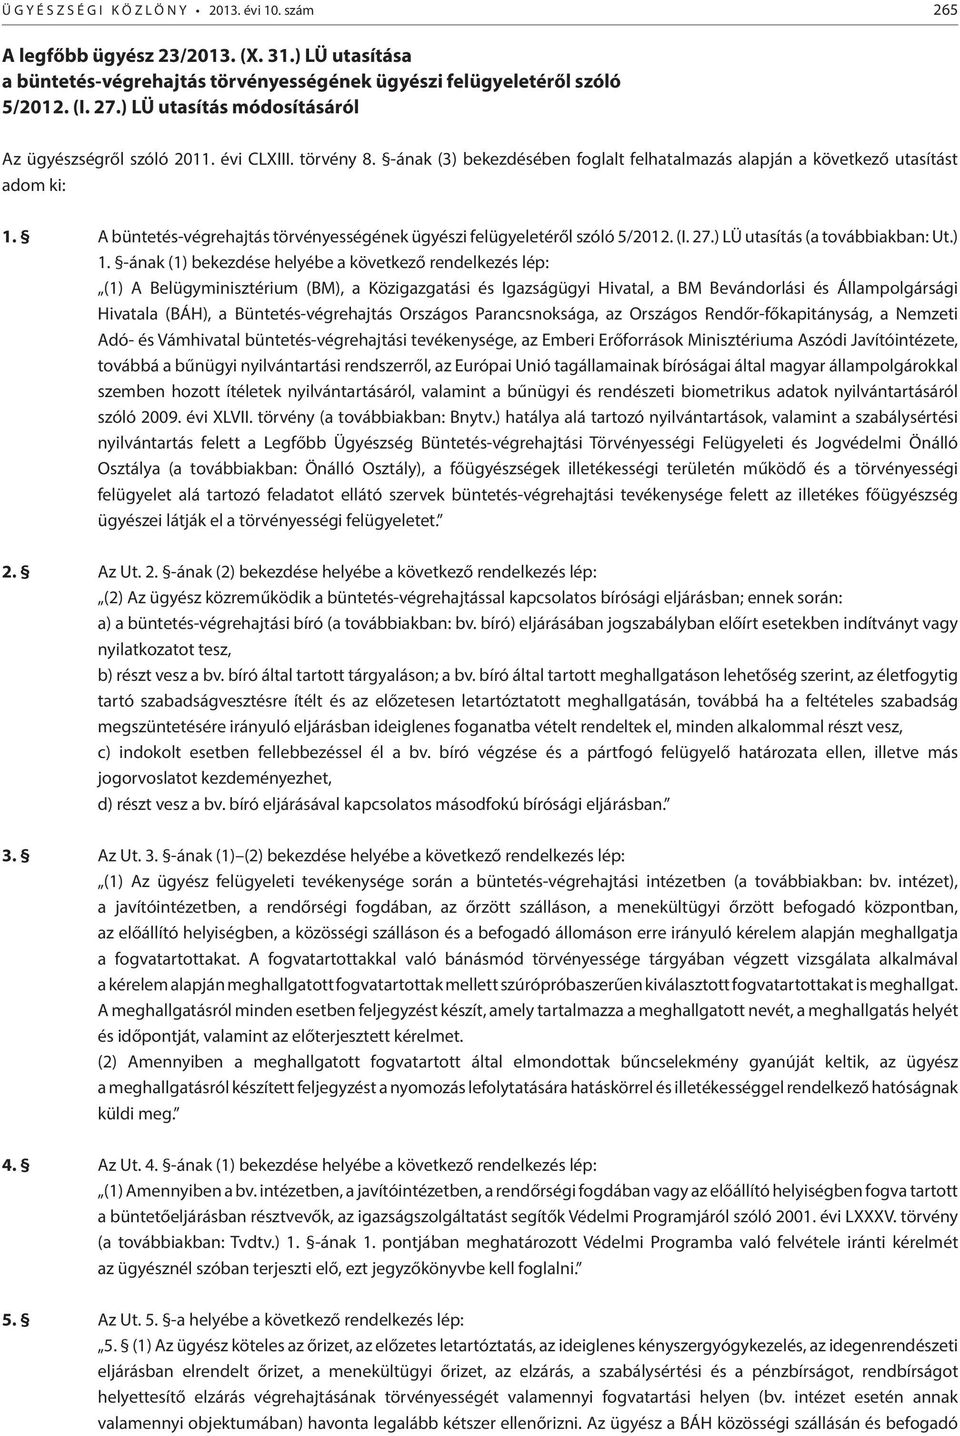 A büntetés-végrehajtás törvényességének ügyészi felügyeletéről szóló 5/2012. (I. 27.) LÜ utasítás (a továbbiakban: Ut.) 1.